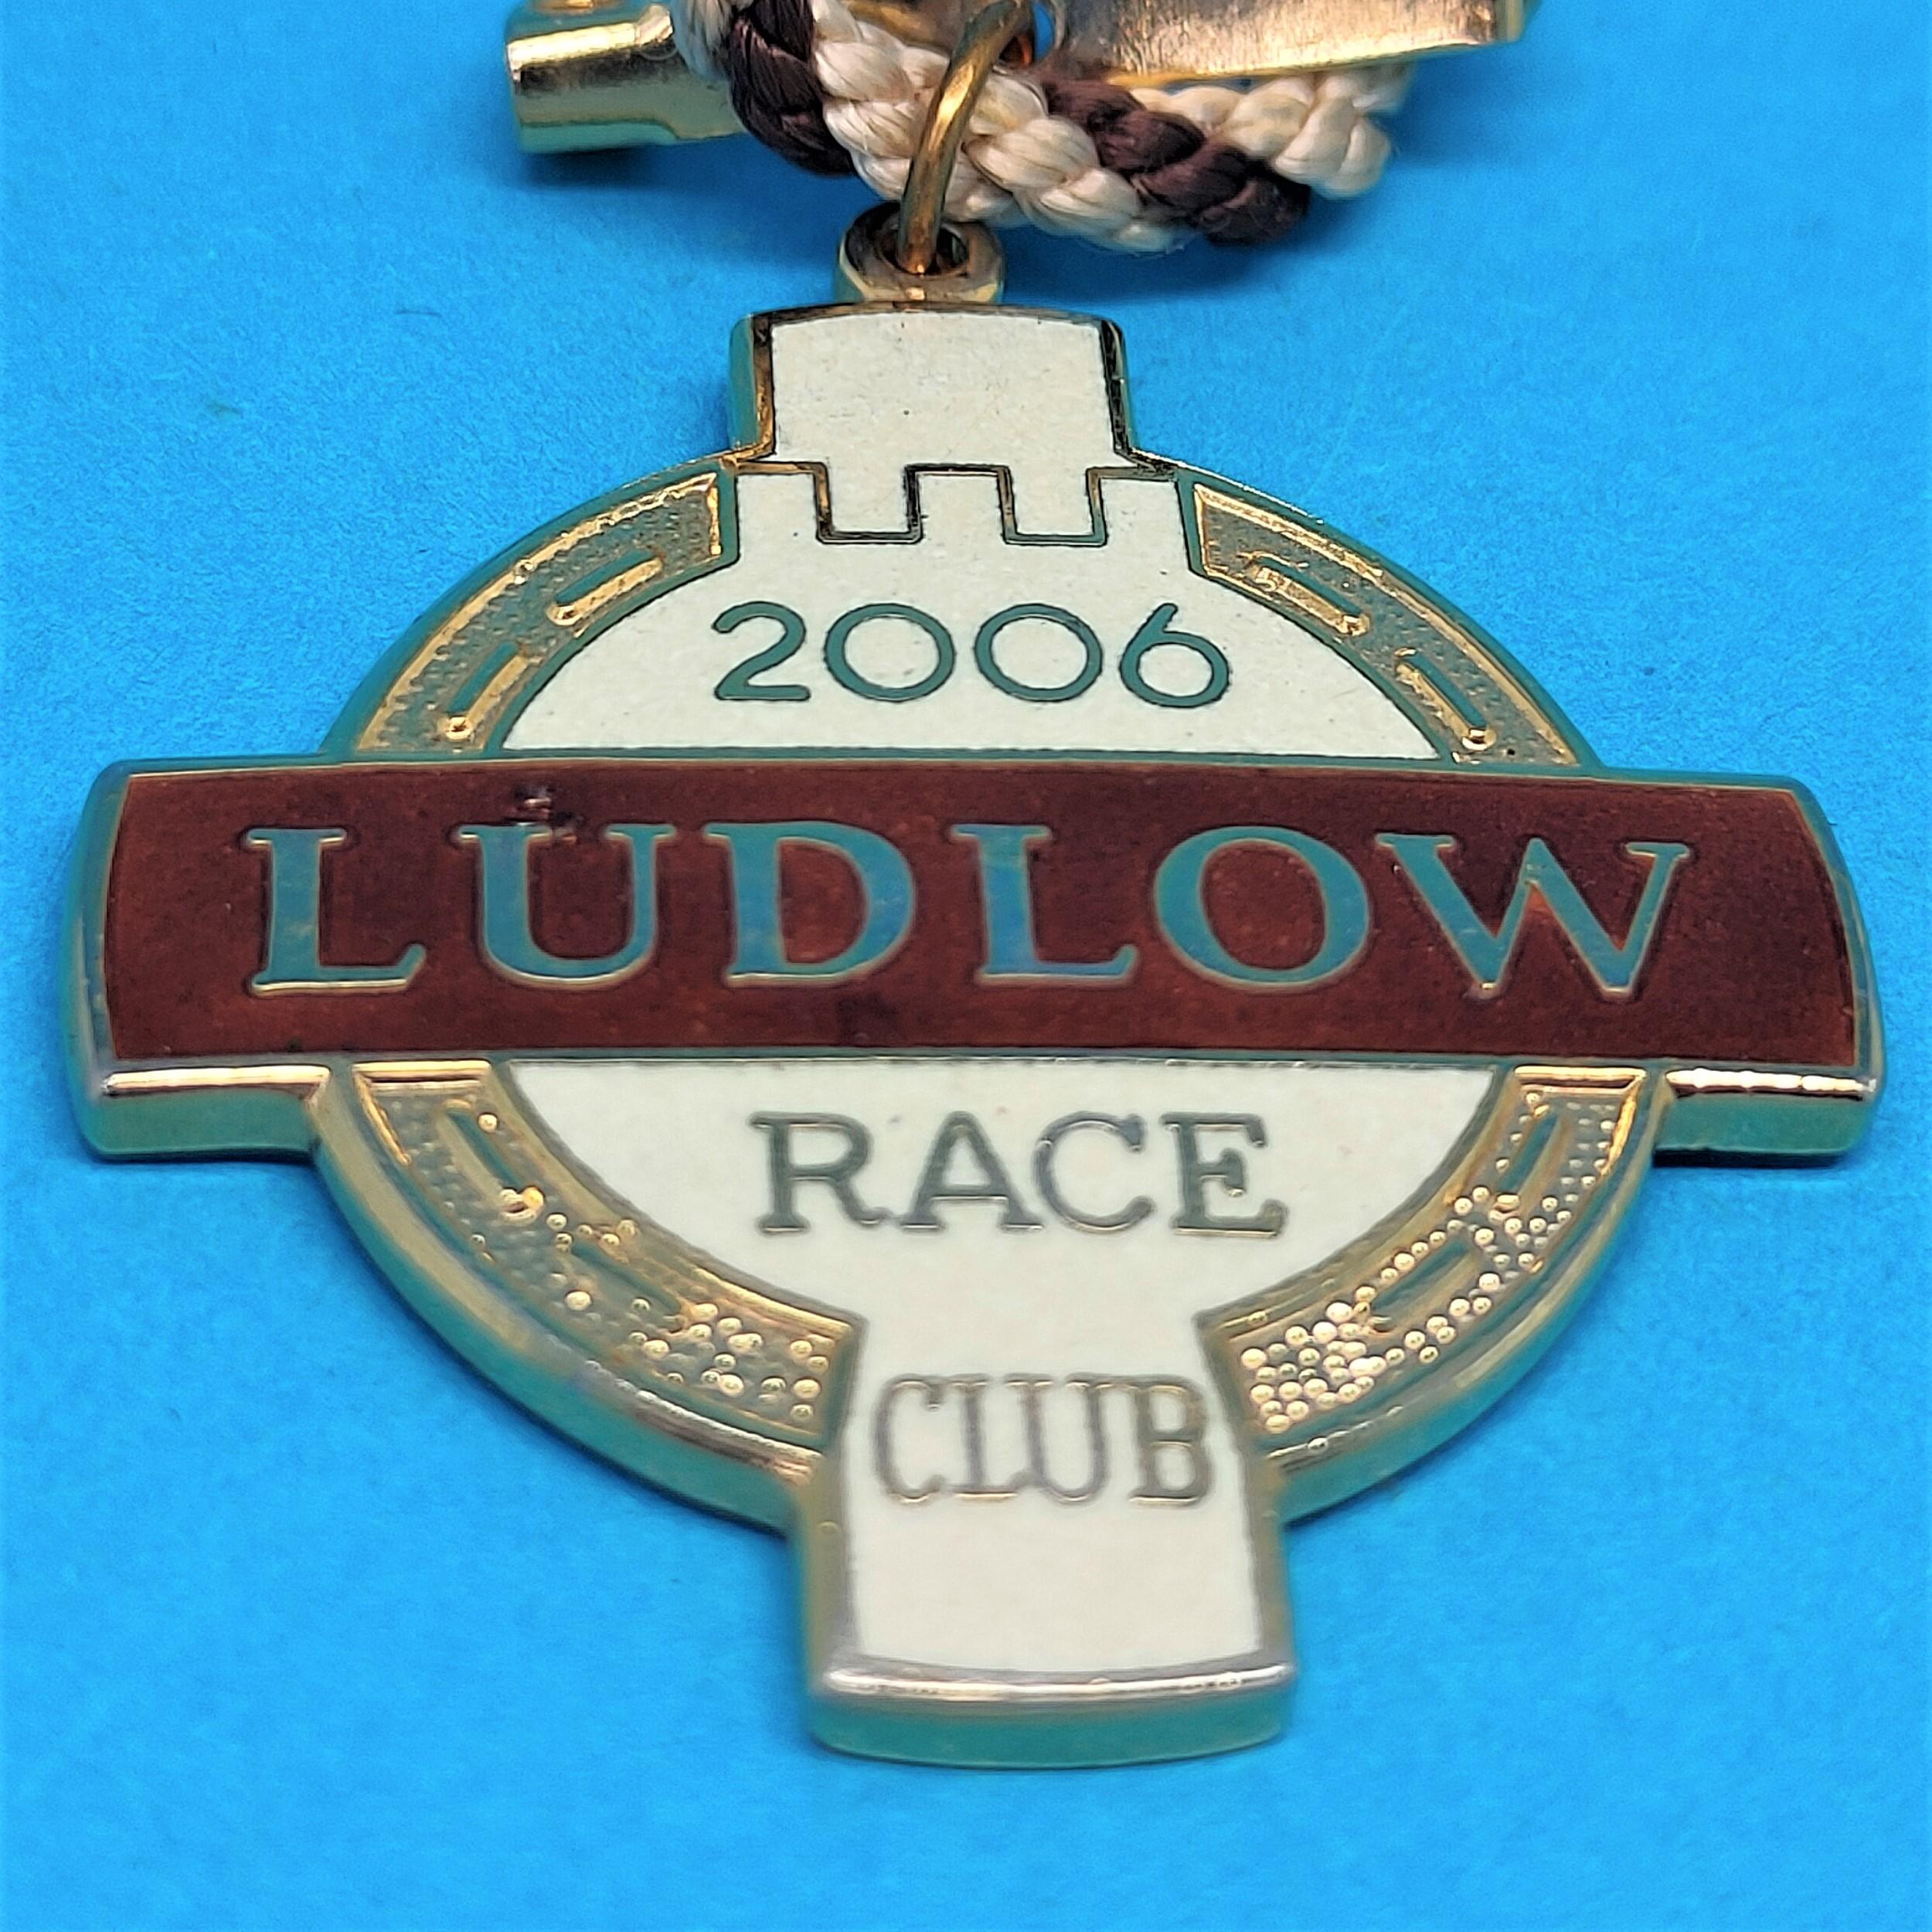 Ludlow 2006